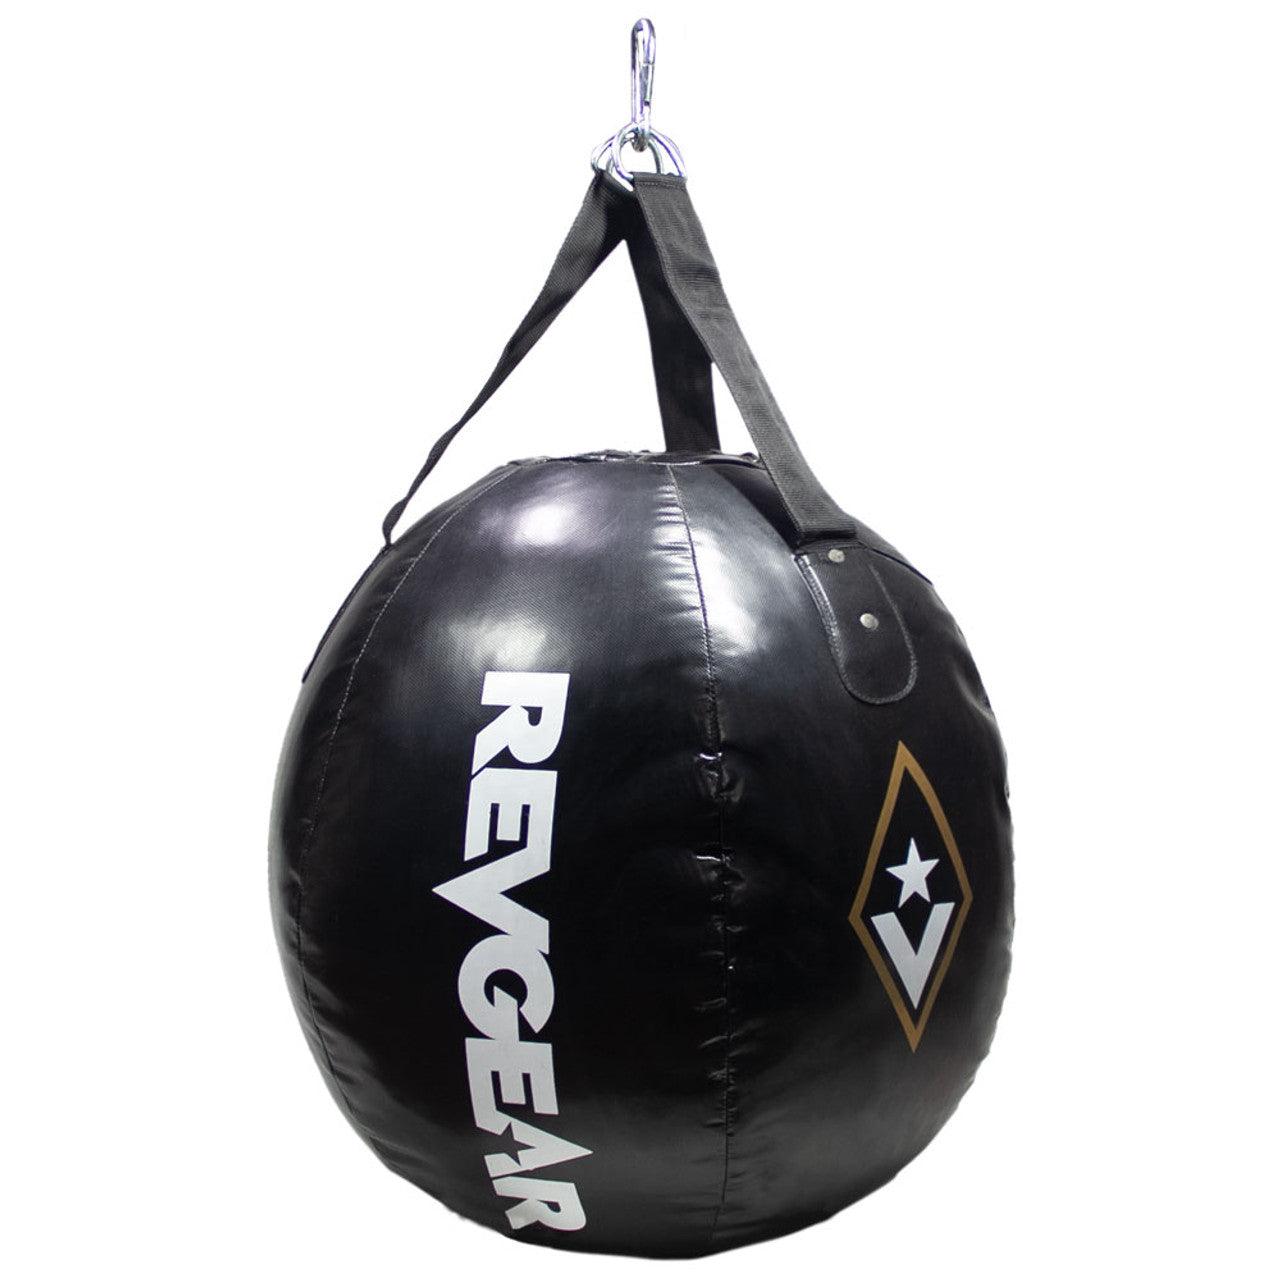 Revgear Wrecking Ball Heavy Bag - Violent Art Shop